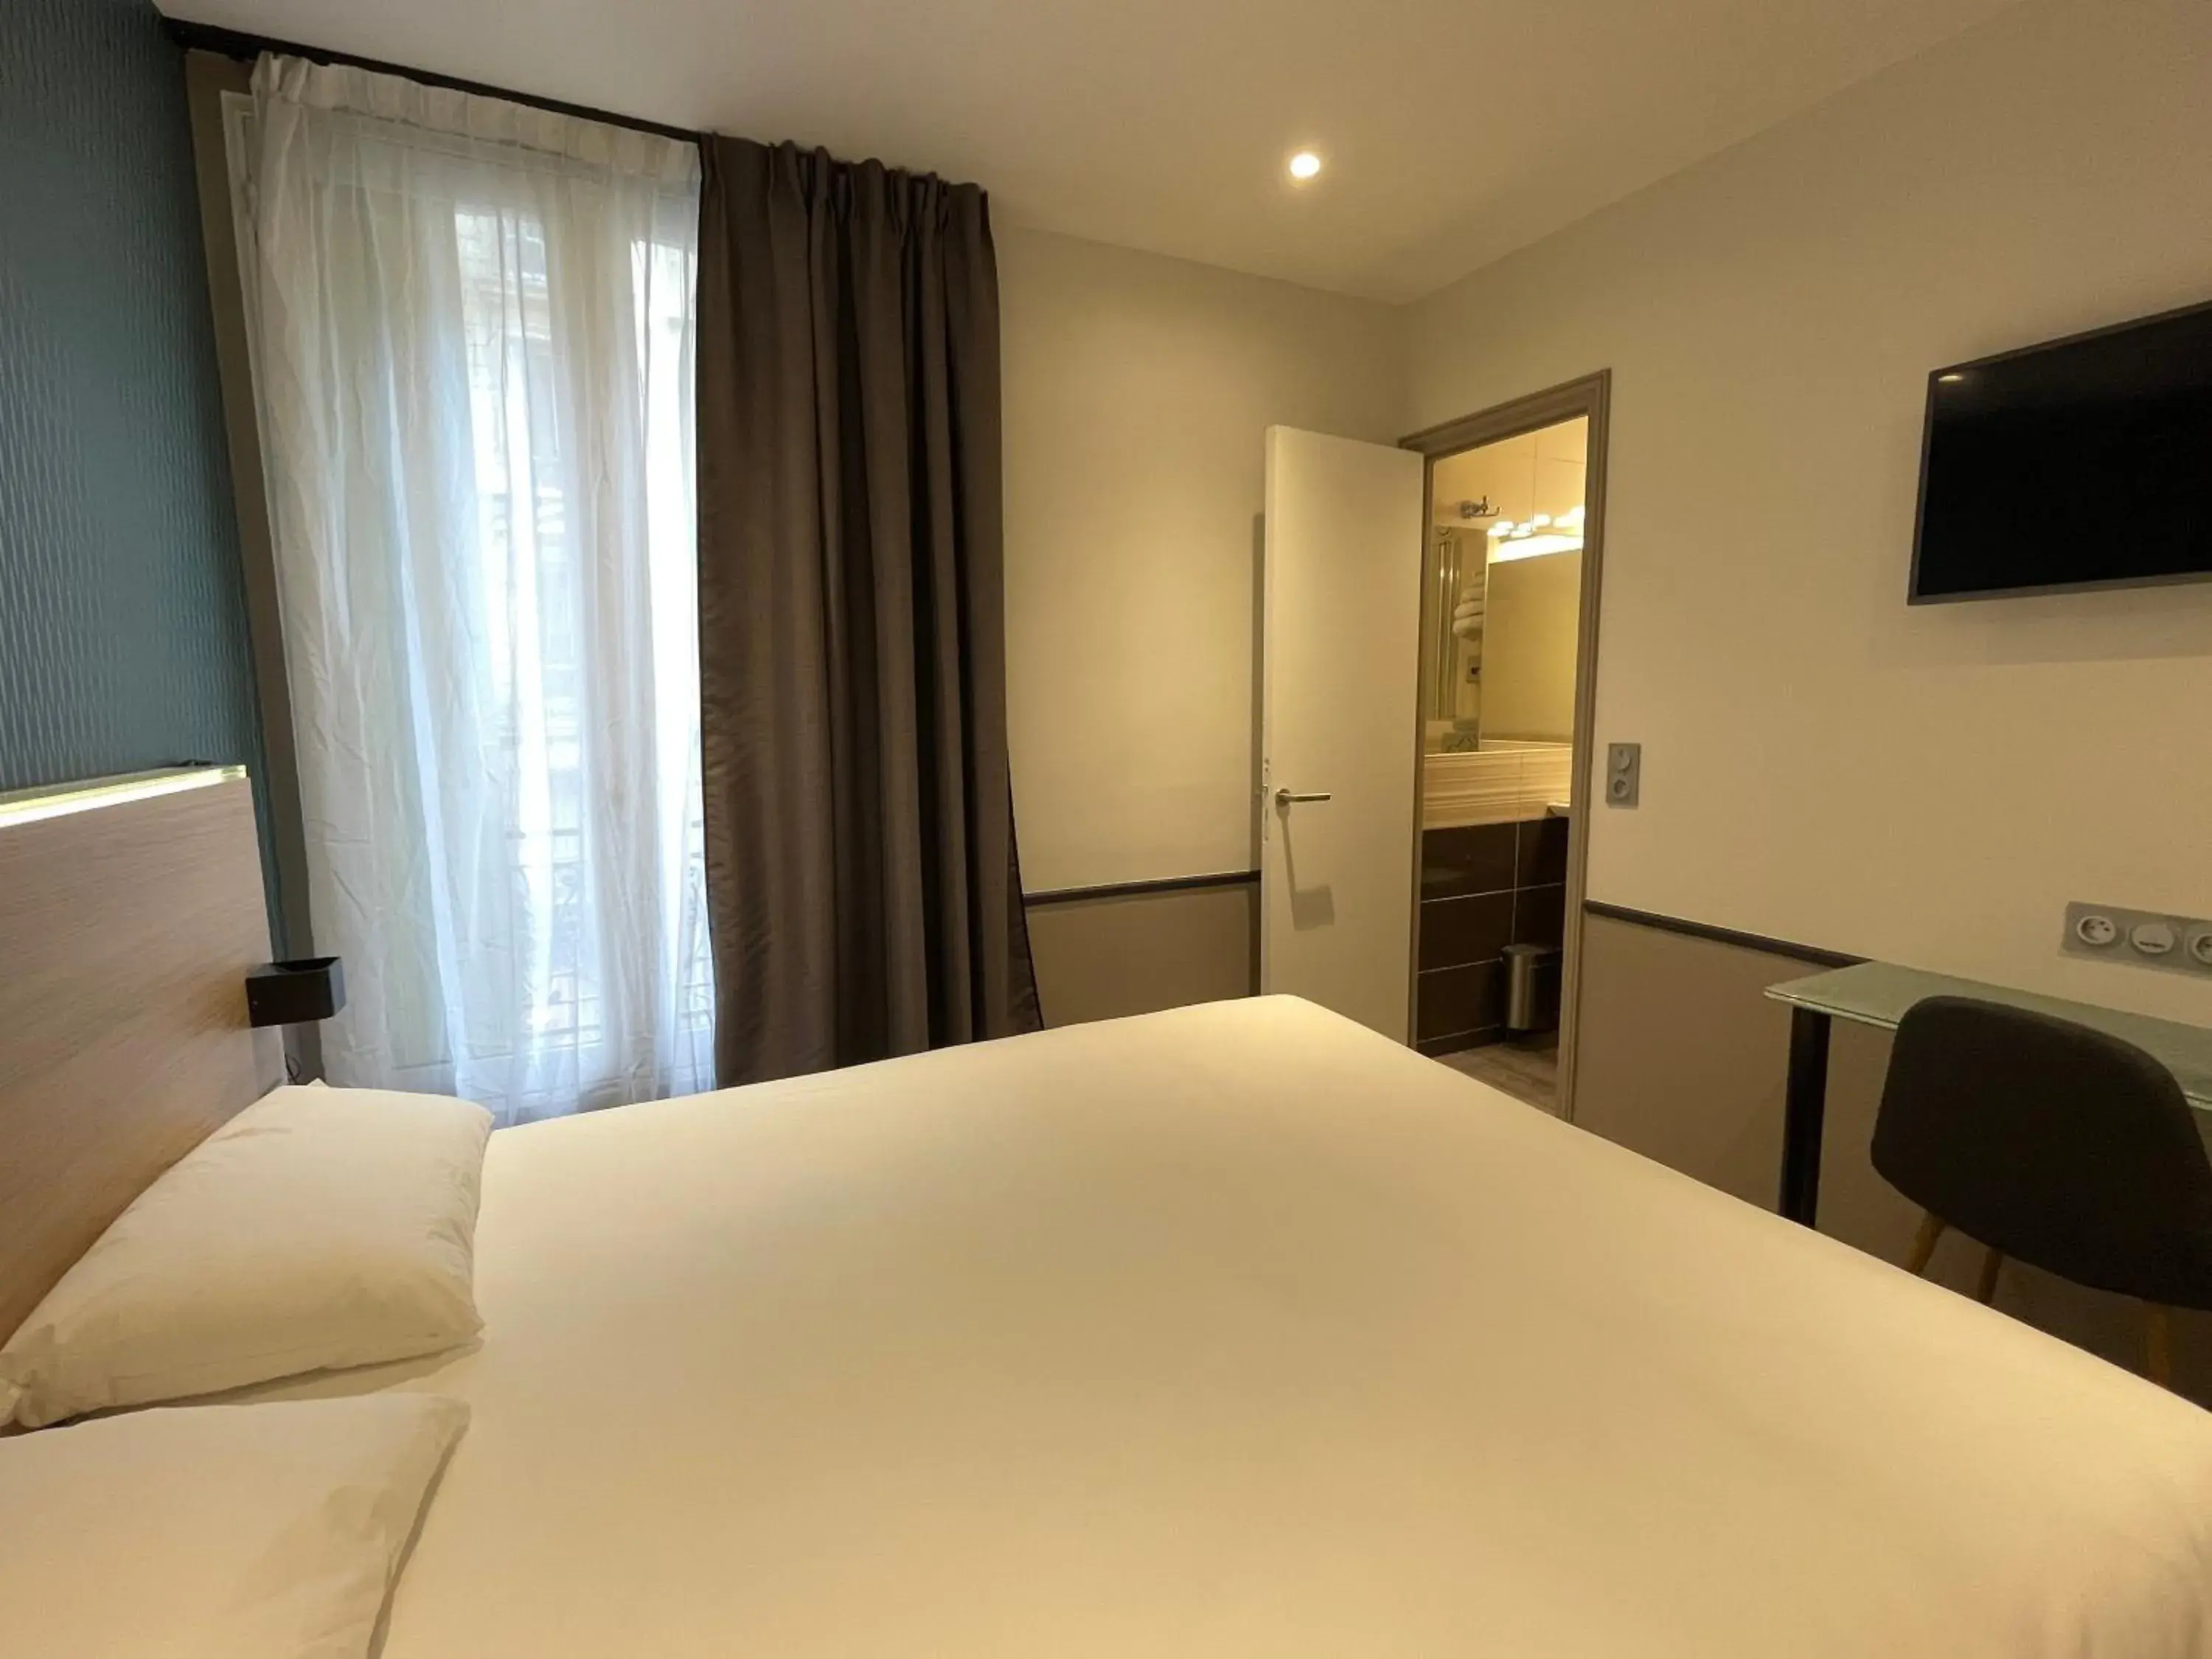 Bed in Hotel de Saint-Germain